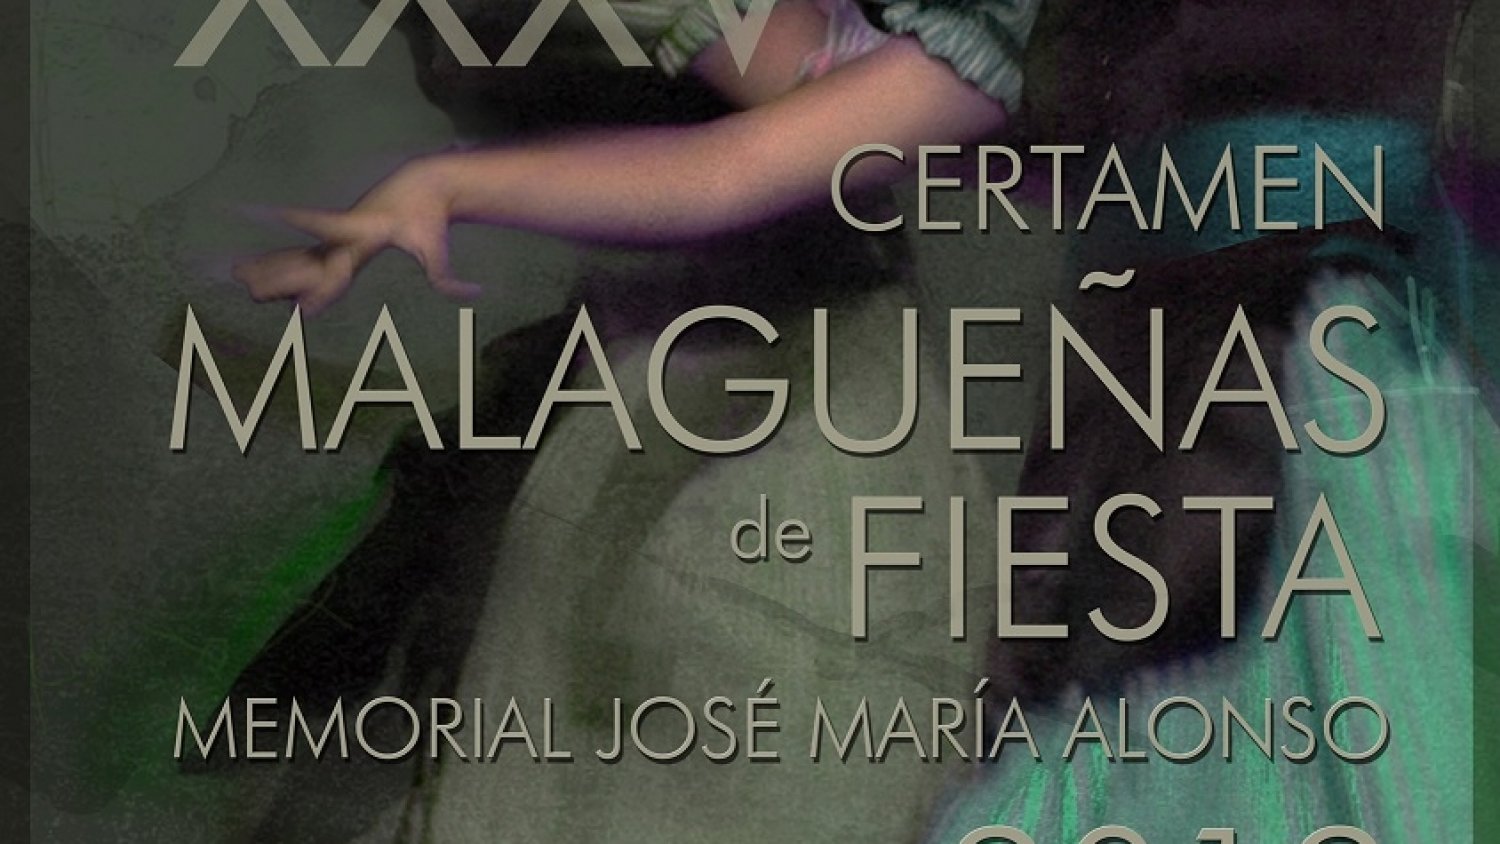 Las semifinales del Certamen de Malagueñas de Fiesta 2019 darán comienzo este fin de semana con 19 composiciones